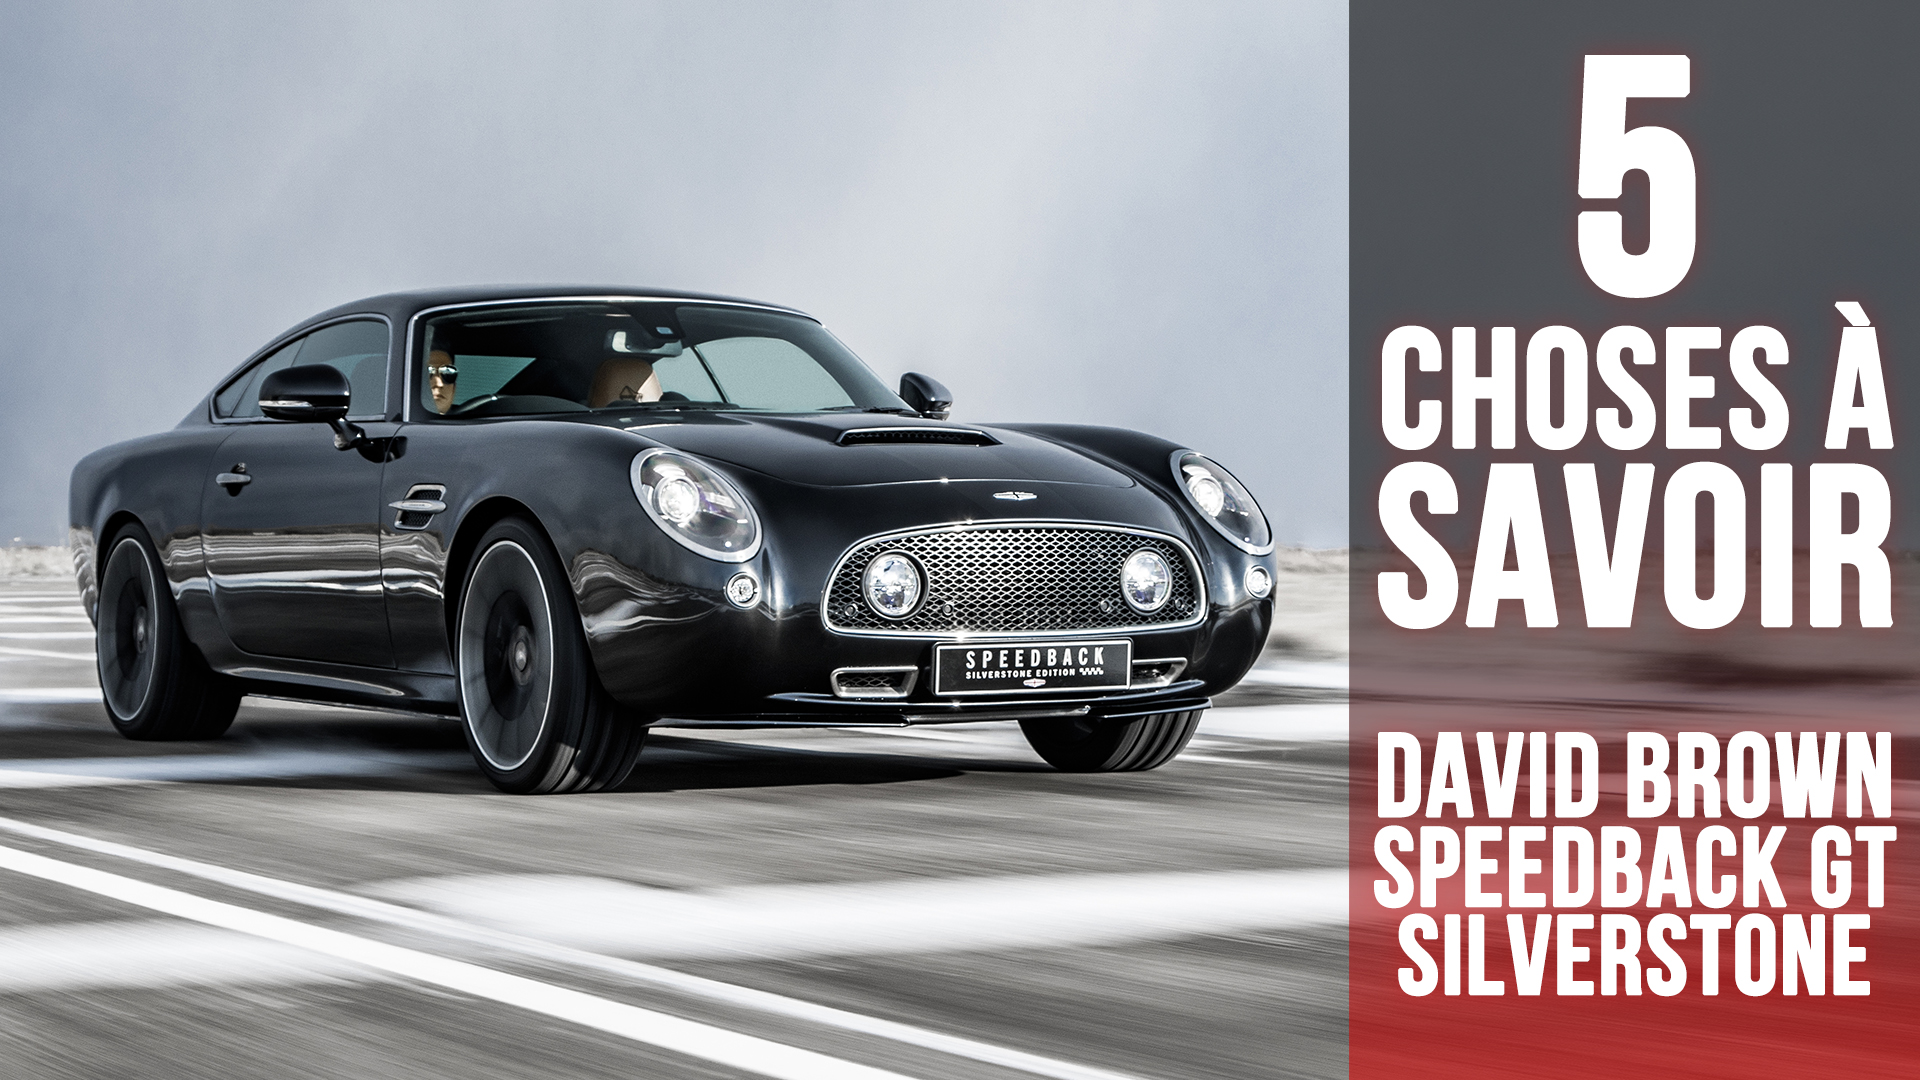 Edition Silverstone, 5 choses à savoir sur le coupé Speedback GT de David Brown Automotive